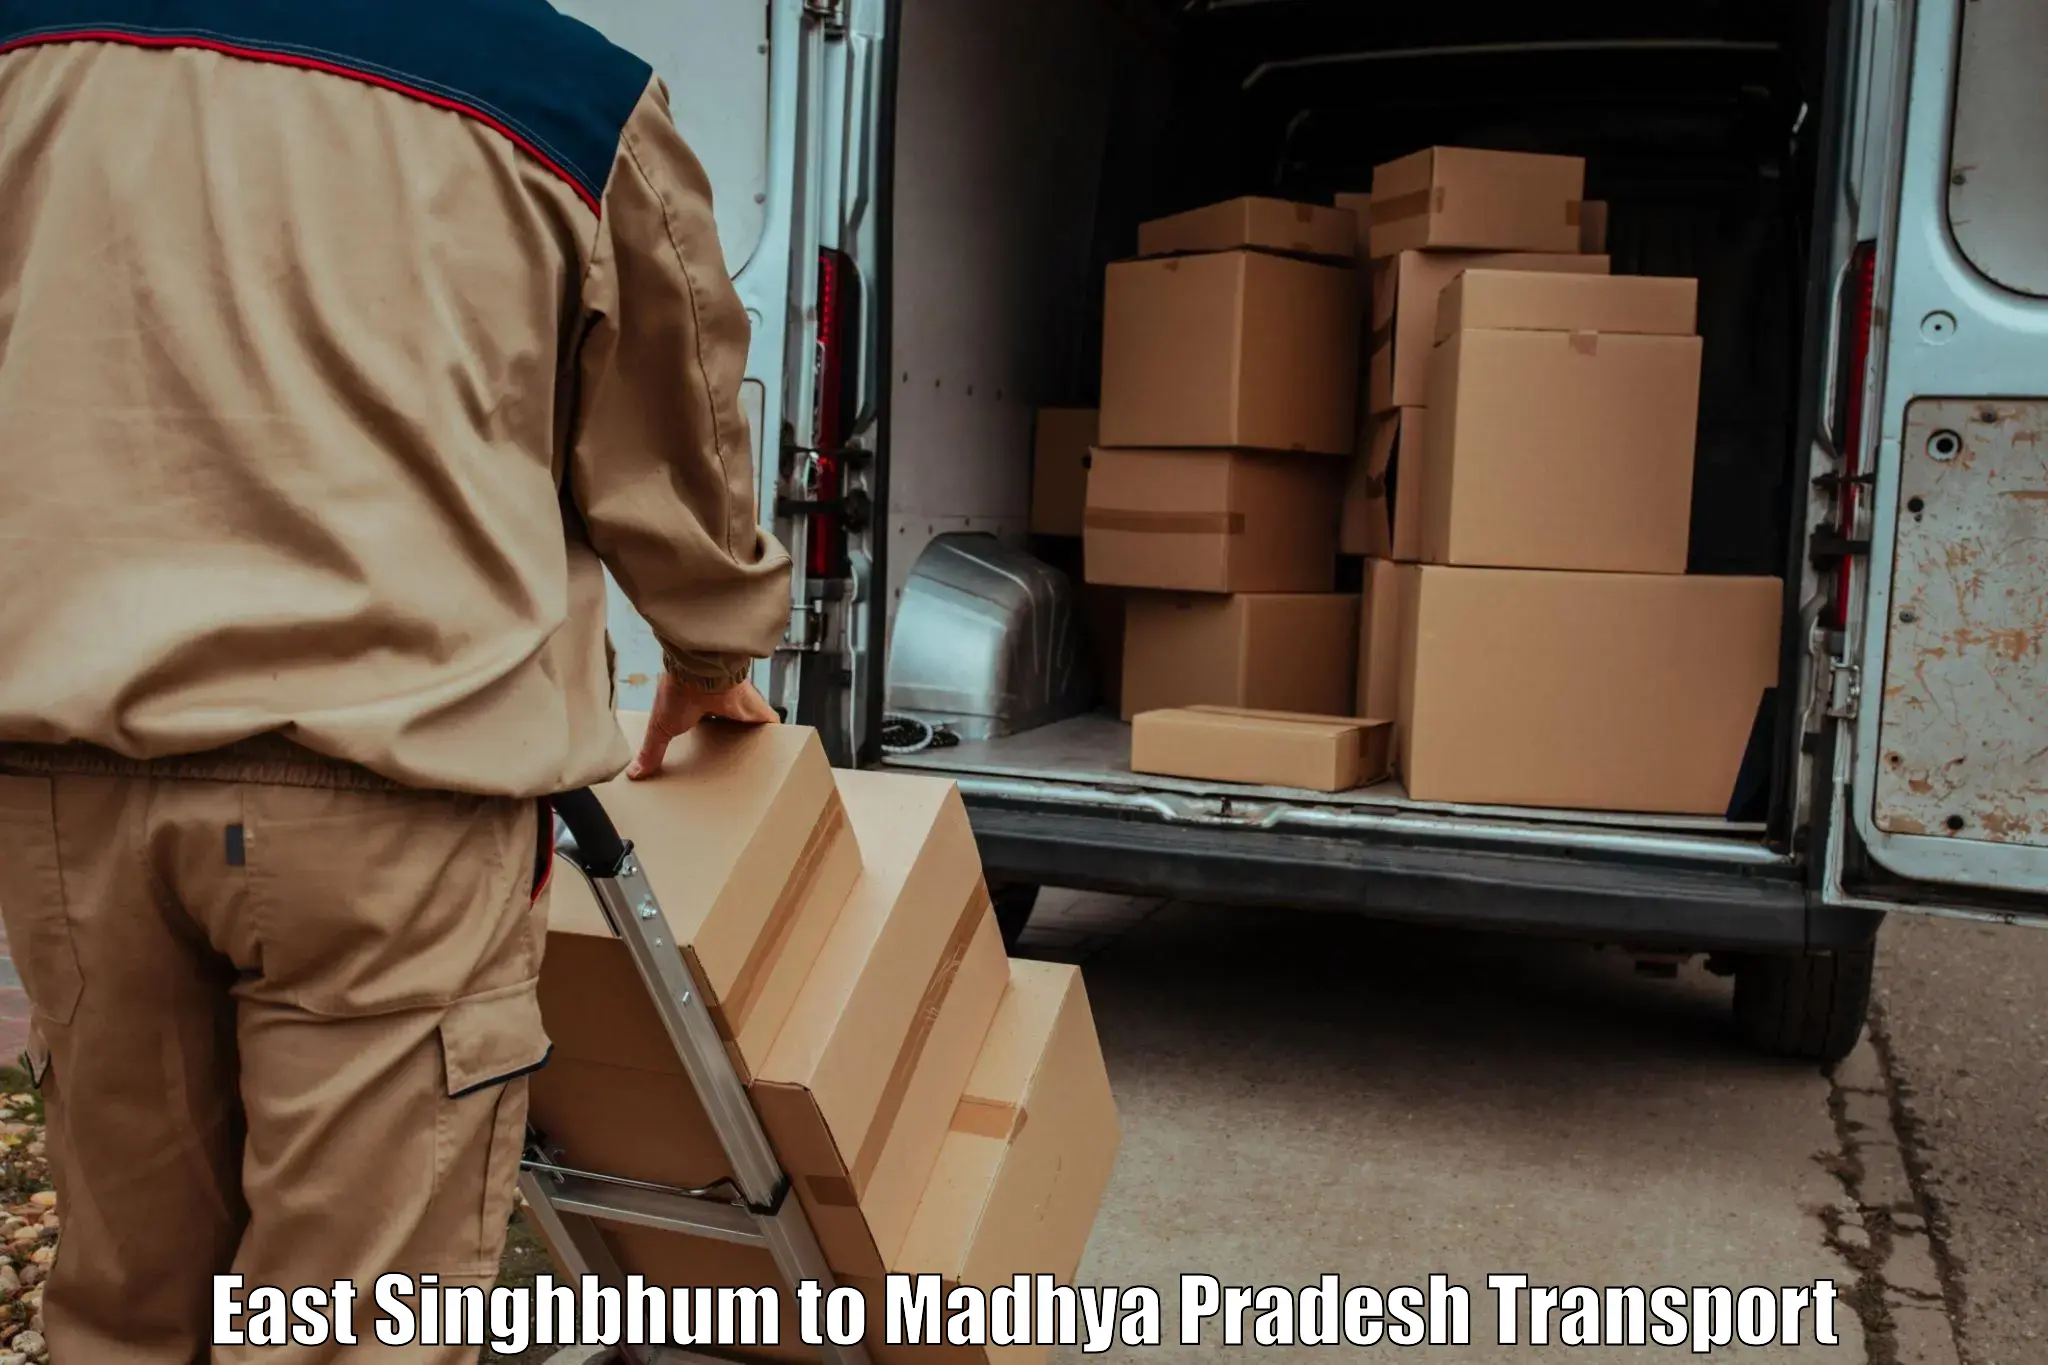 Vehicle transport services East Singhbhum to Niwari